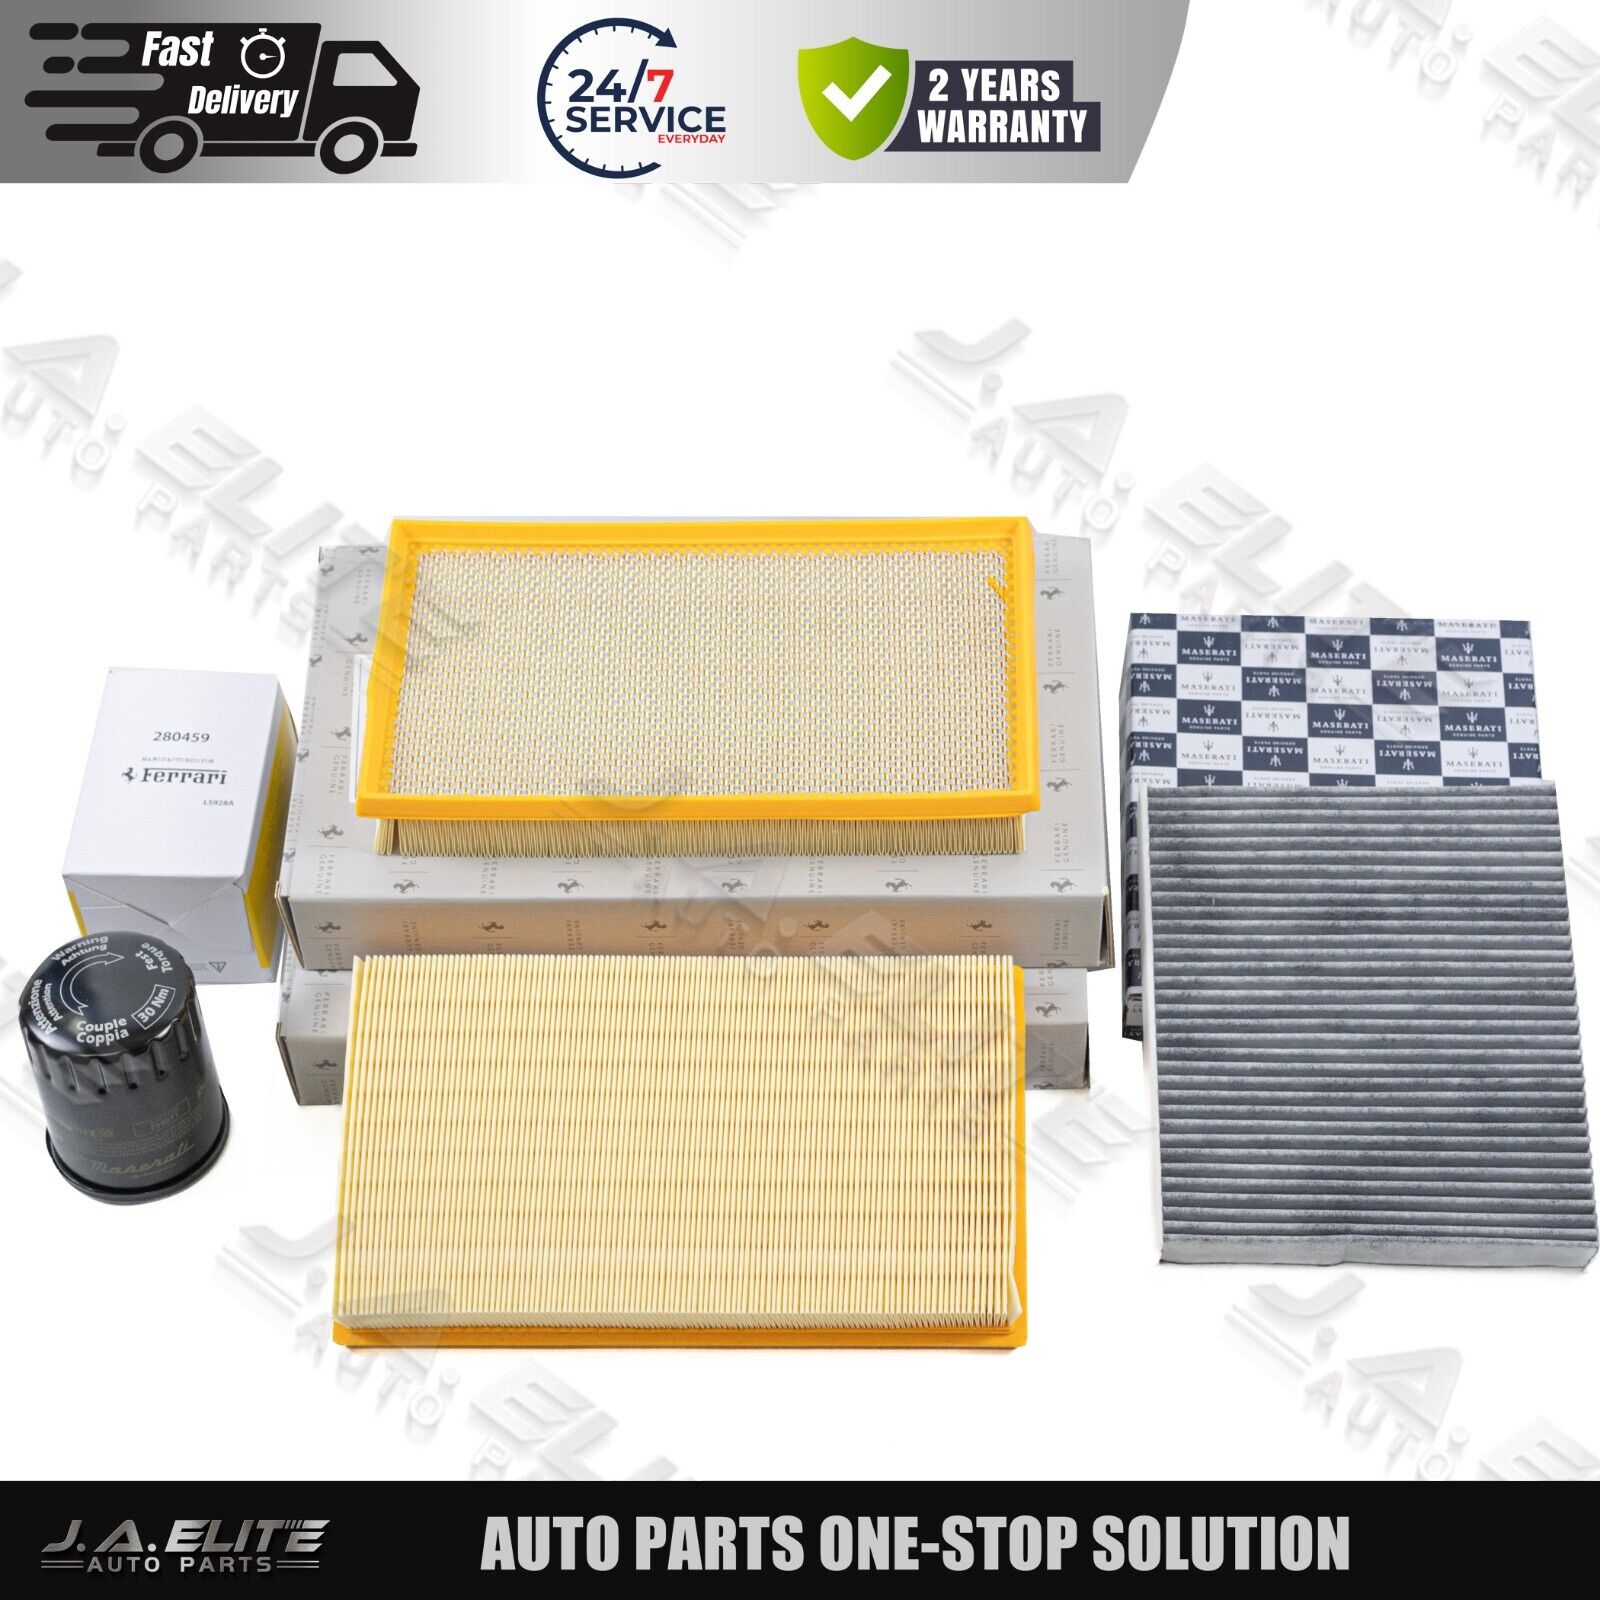 4pcs Air Filter & Pollen Filter & Oil Filter for Ferrari 599, 612